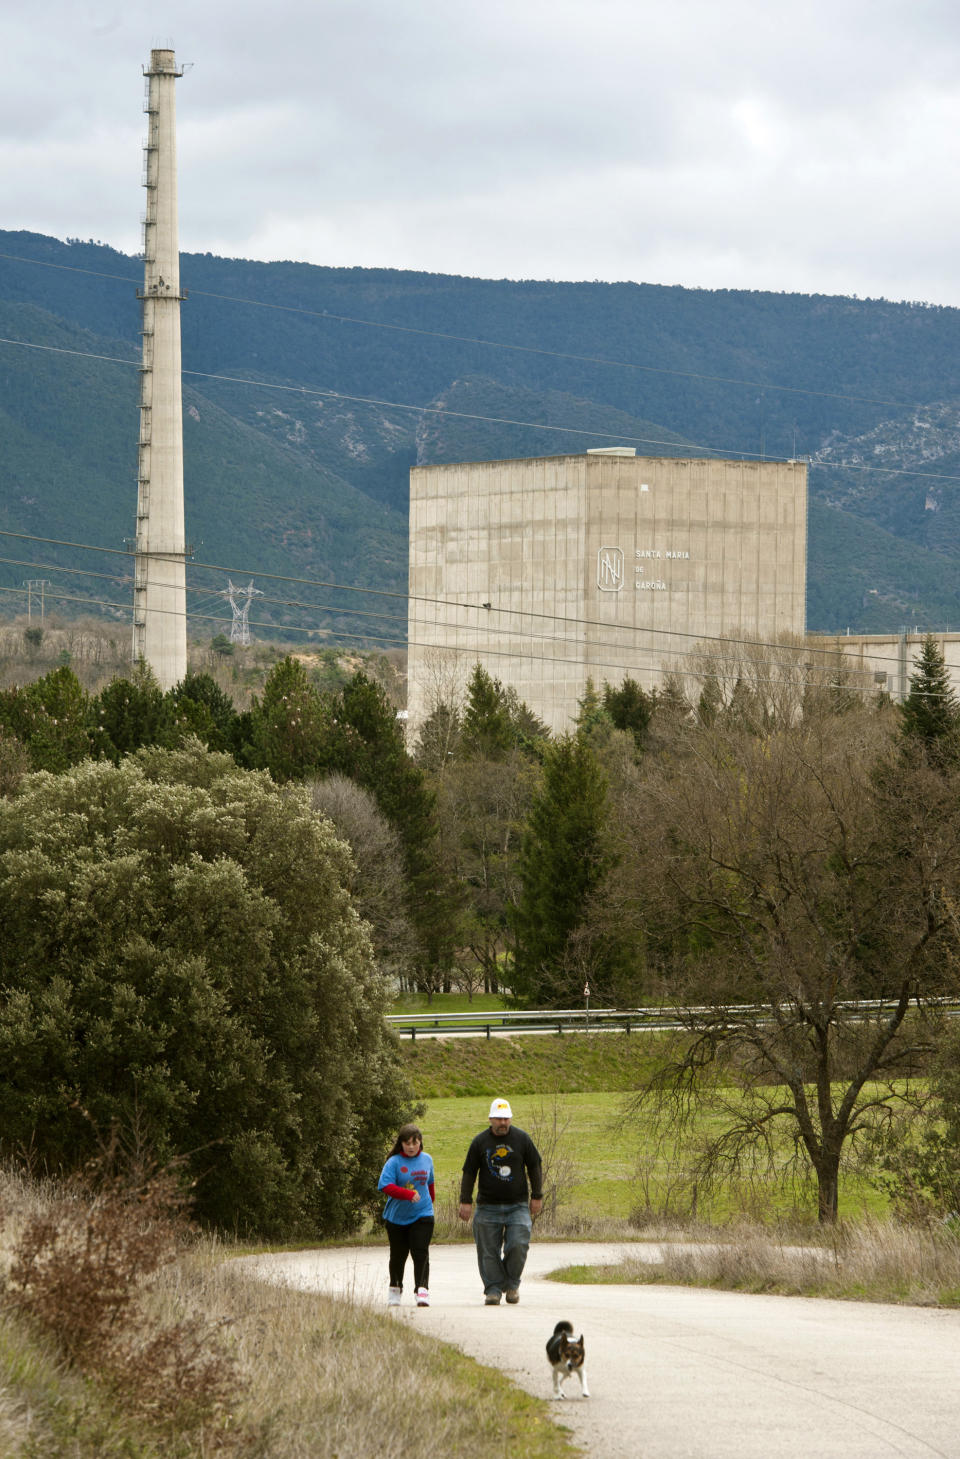 <p>La central nuclear Santa María de Garoña, propiedad de Nuclenor, se inauguró en 1971 y cesó su actividad en 2012. (Foto: Felix Ordoñez / Reuters).</p> 